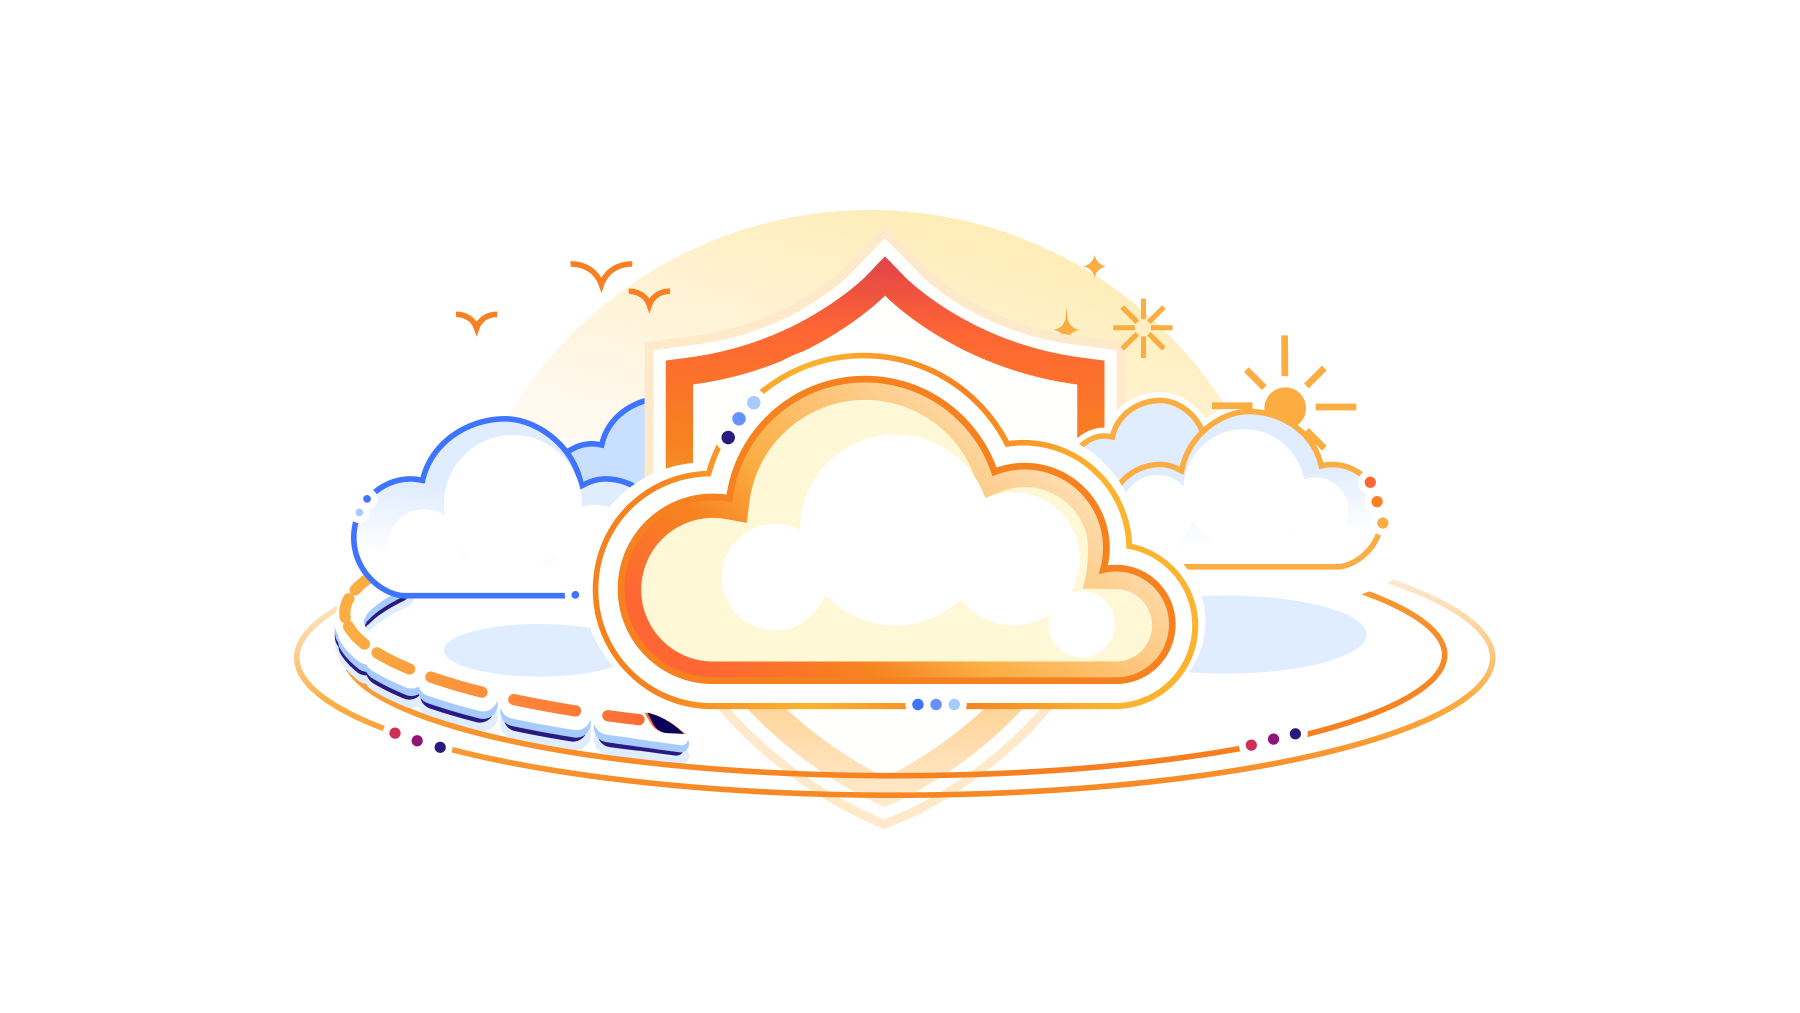 Magic Cloud Networking vereinfacht die Sicherheit, Konnektivität und Verwaltung von öffentlichen Clouds